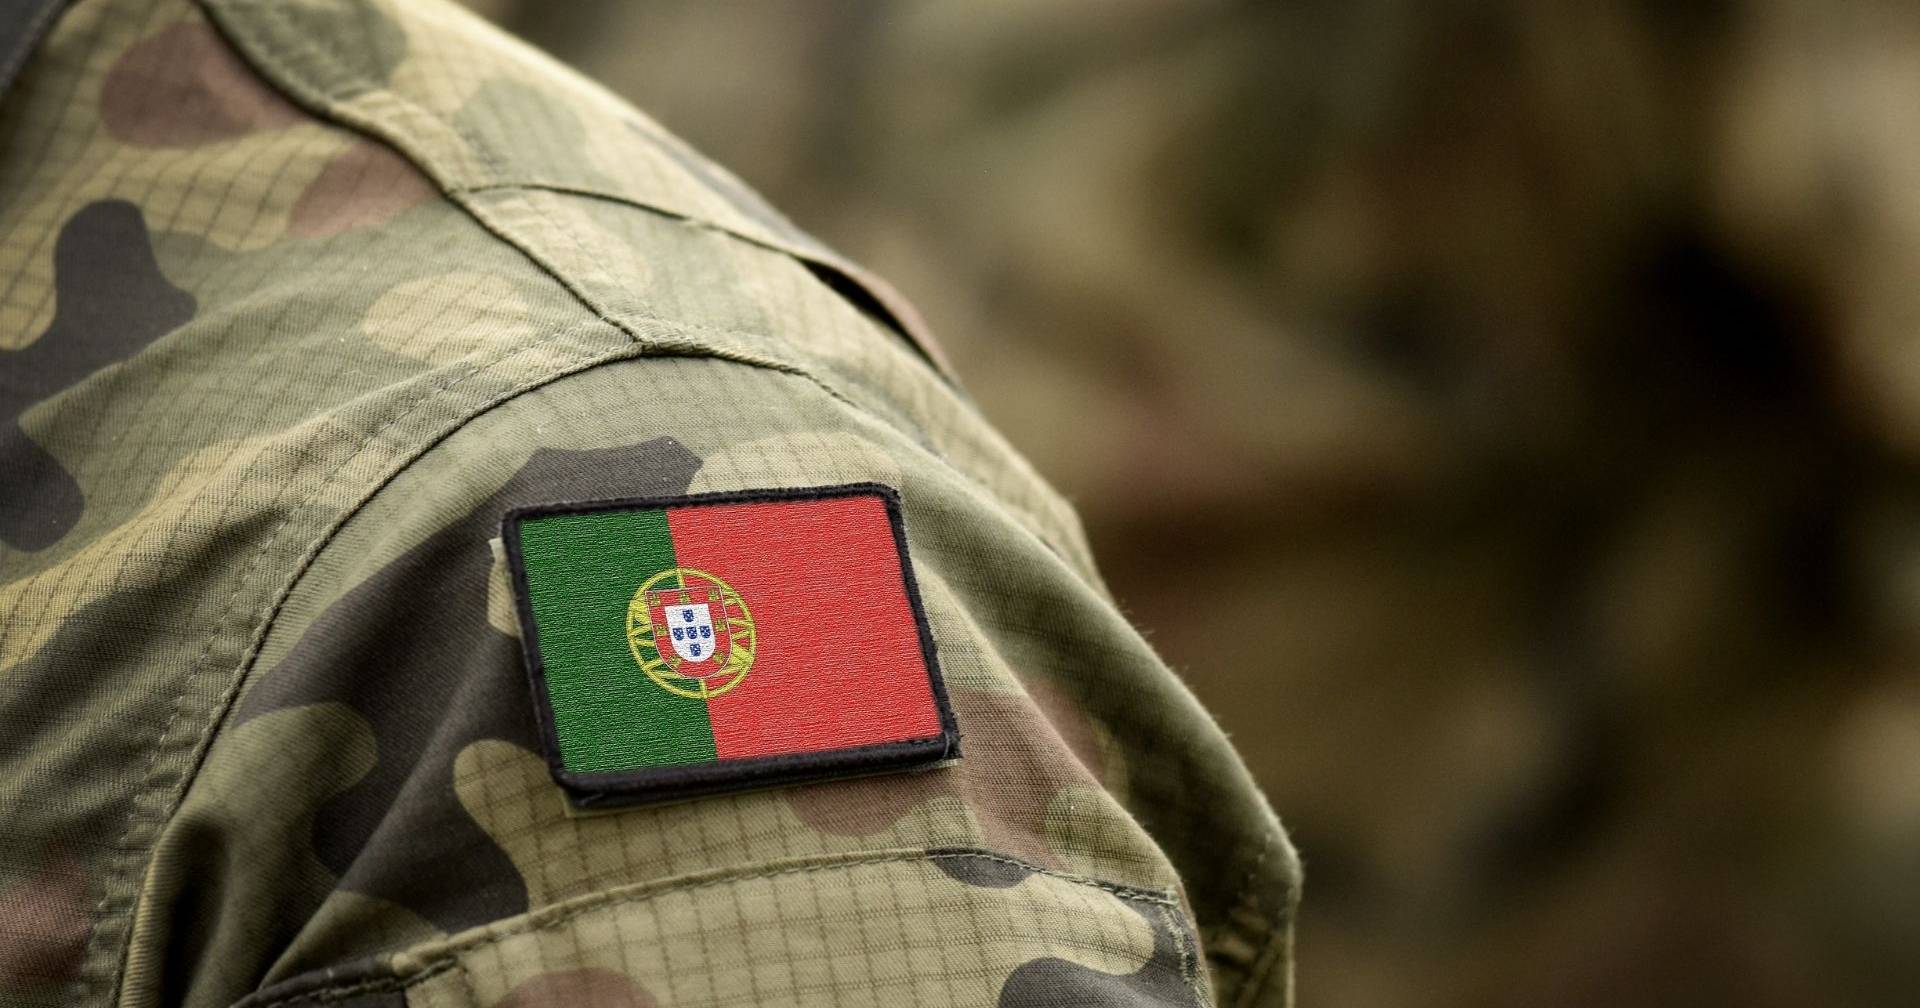 Israel Mendes - Sargento - Exército Brasileiro